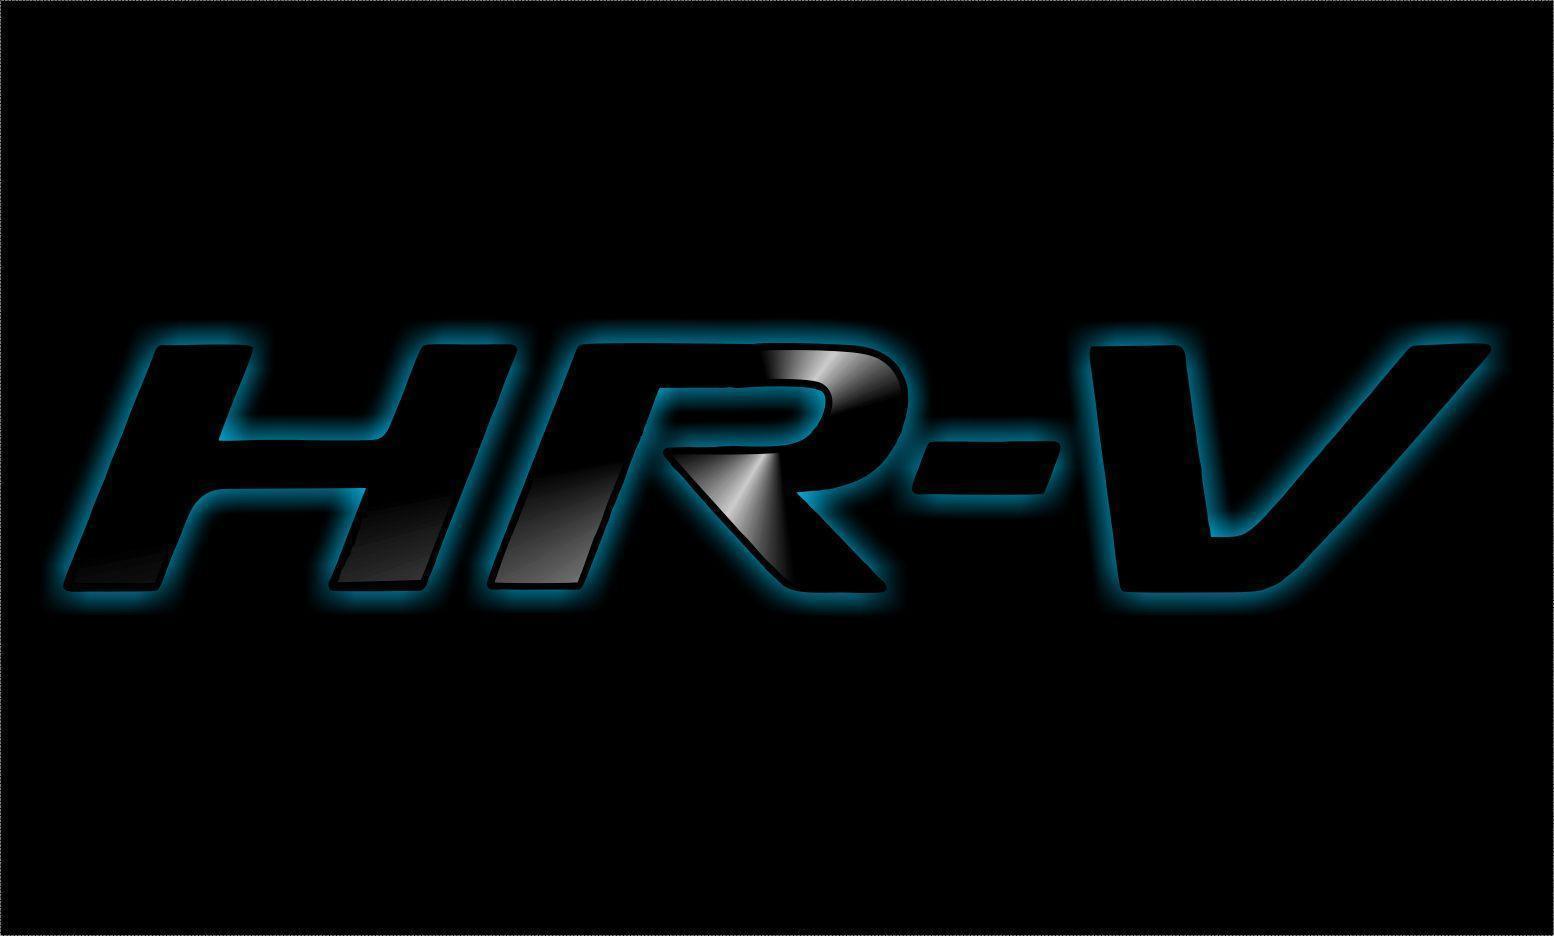 Hr-V Logo - Honda HR V Wallpaper